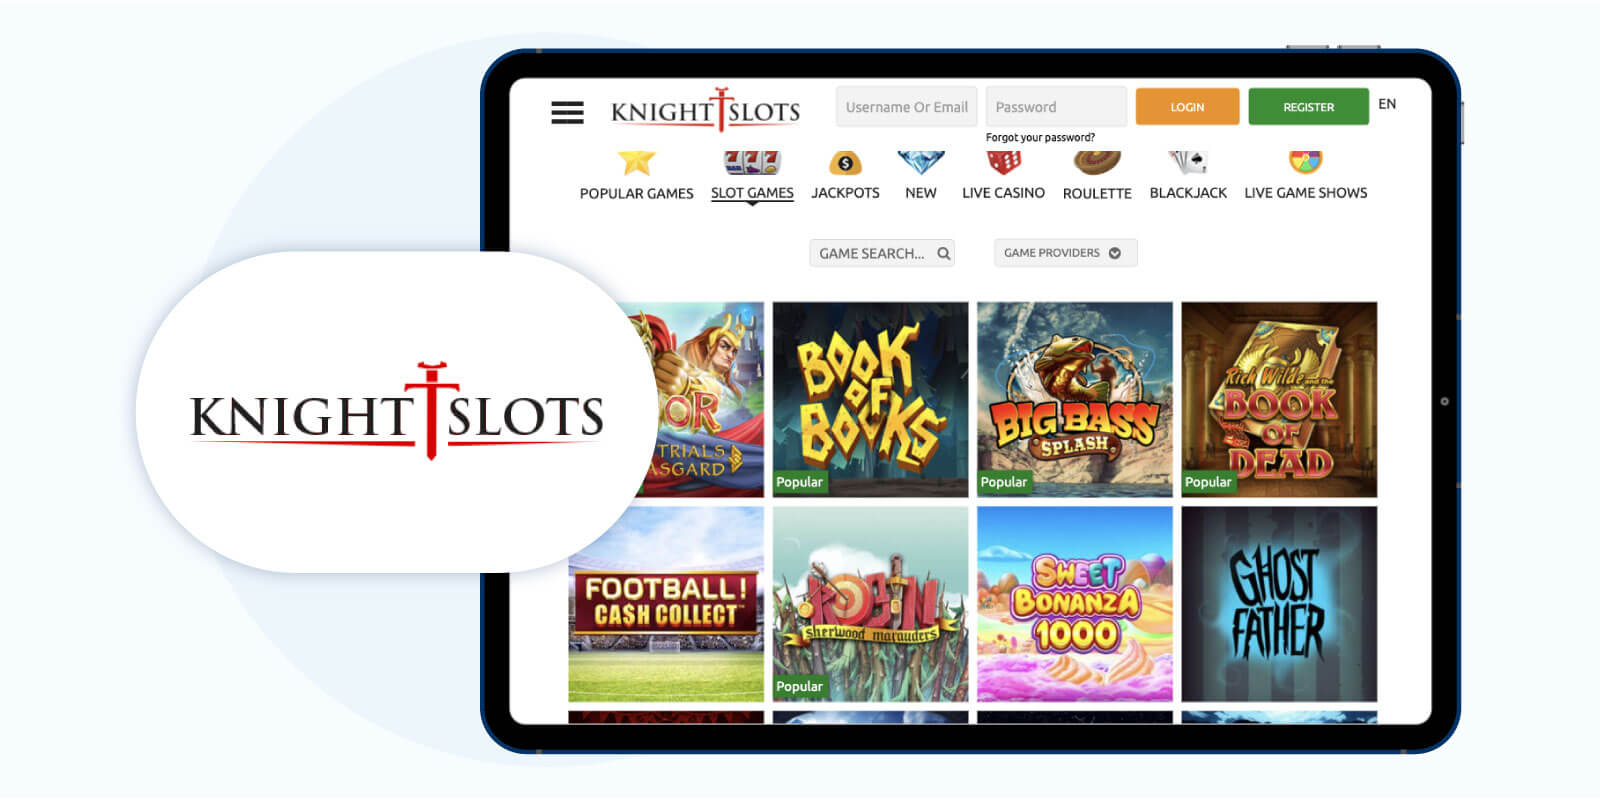 KnightSlots Casino - KingCasinoBonus.uk's Choice for the Best MuchBetter Casino.